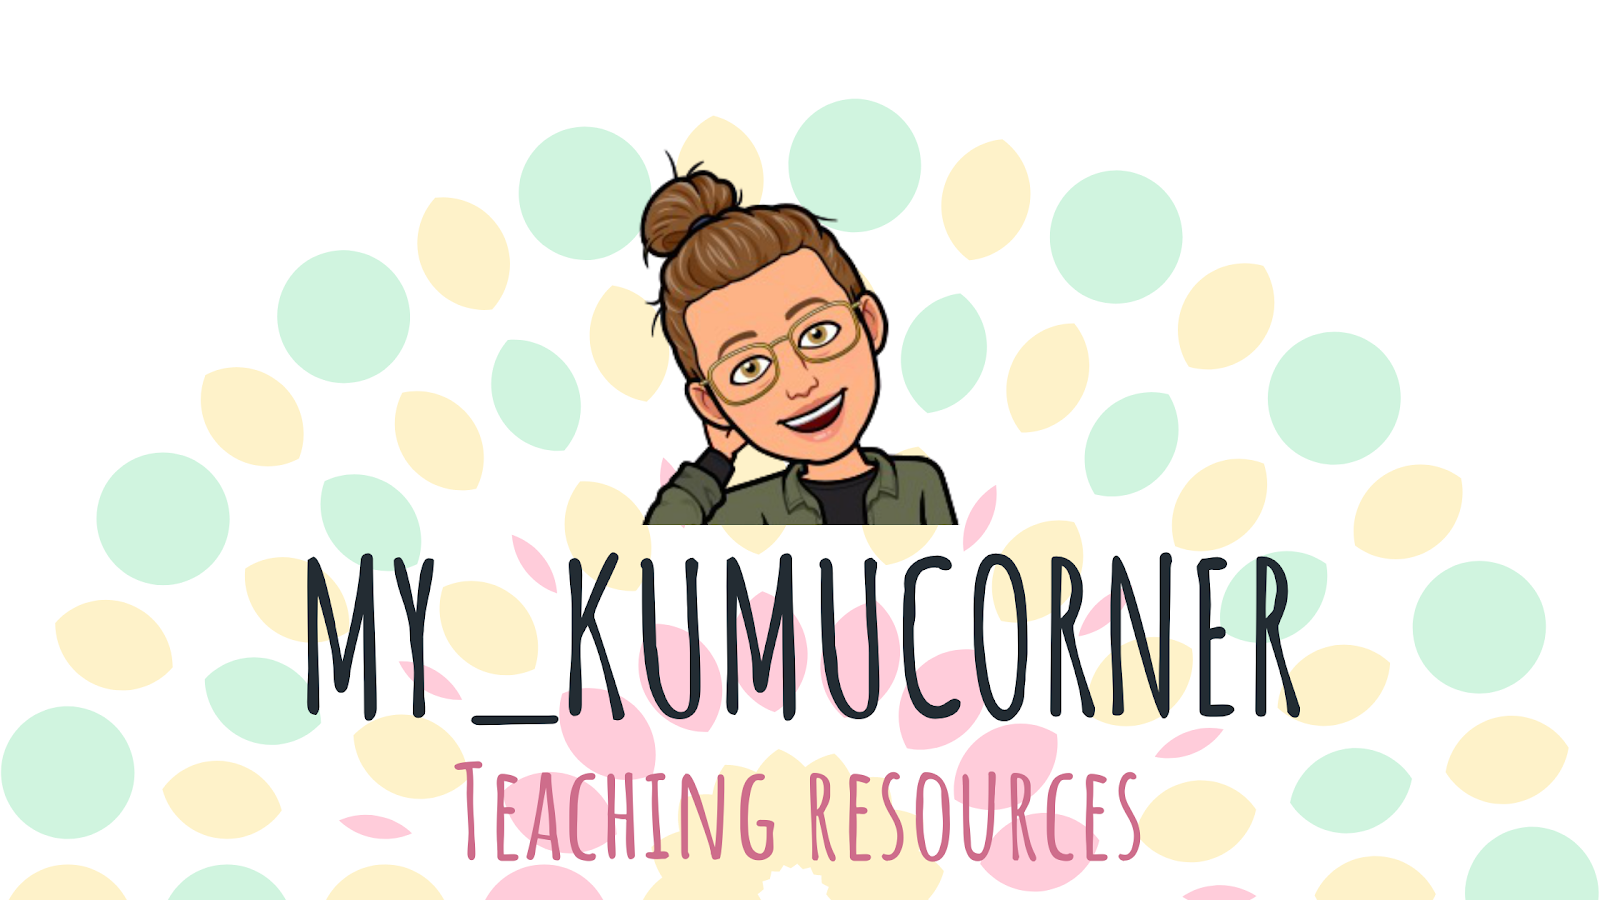 Kumucorner teaching resources